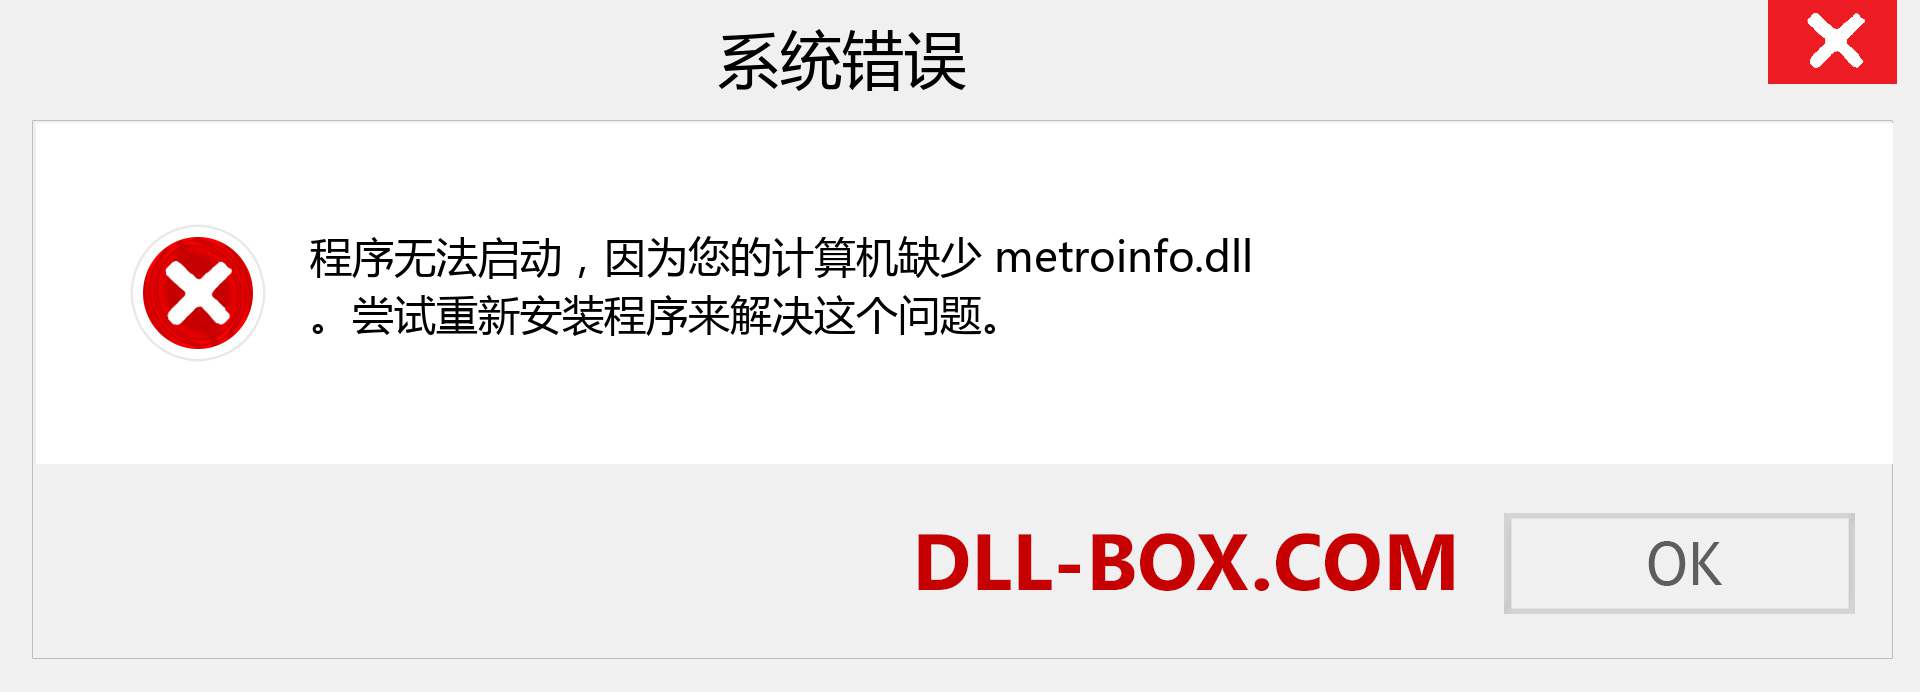 metroinfo.dll 文件丢失？。 适用于 Windows 7、8、10 的下载 - 修复 Windows、照片、图像上的 metroinfo dll 丢失错误